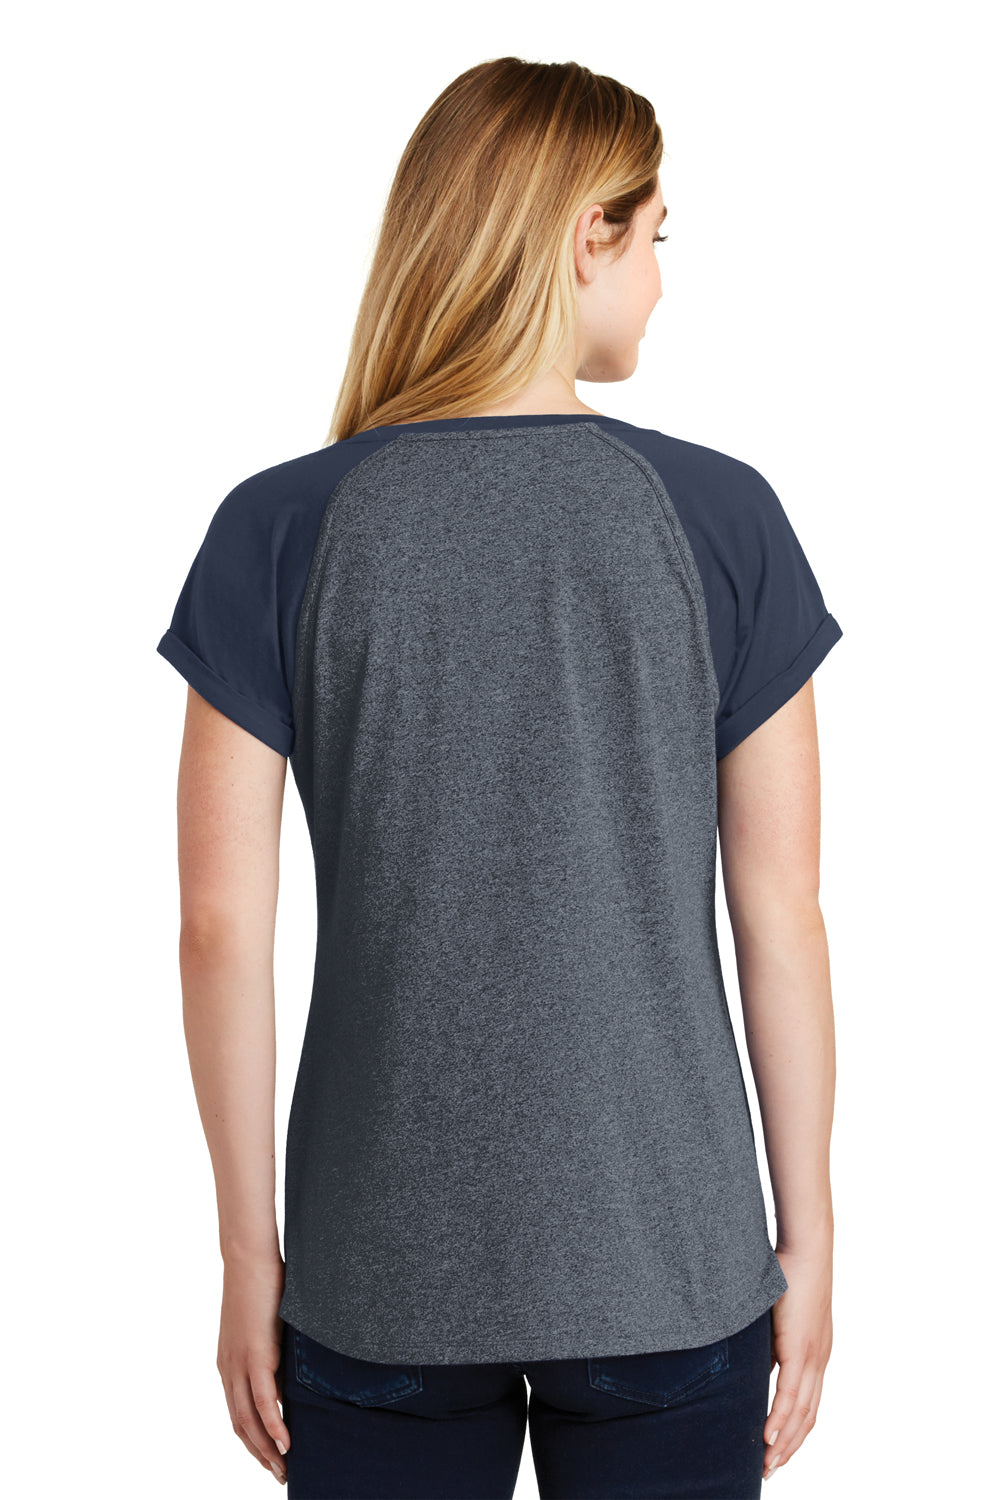 New Era LNEA107 Womens Heritage Short Sleeve Crewneck T-Shirt Navy Blue/Navy Blue Twist Back